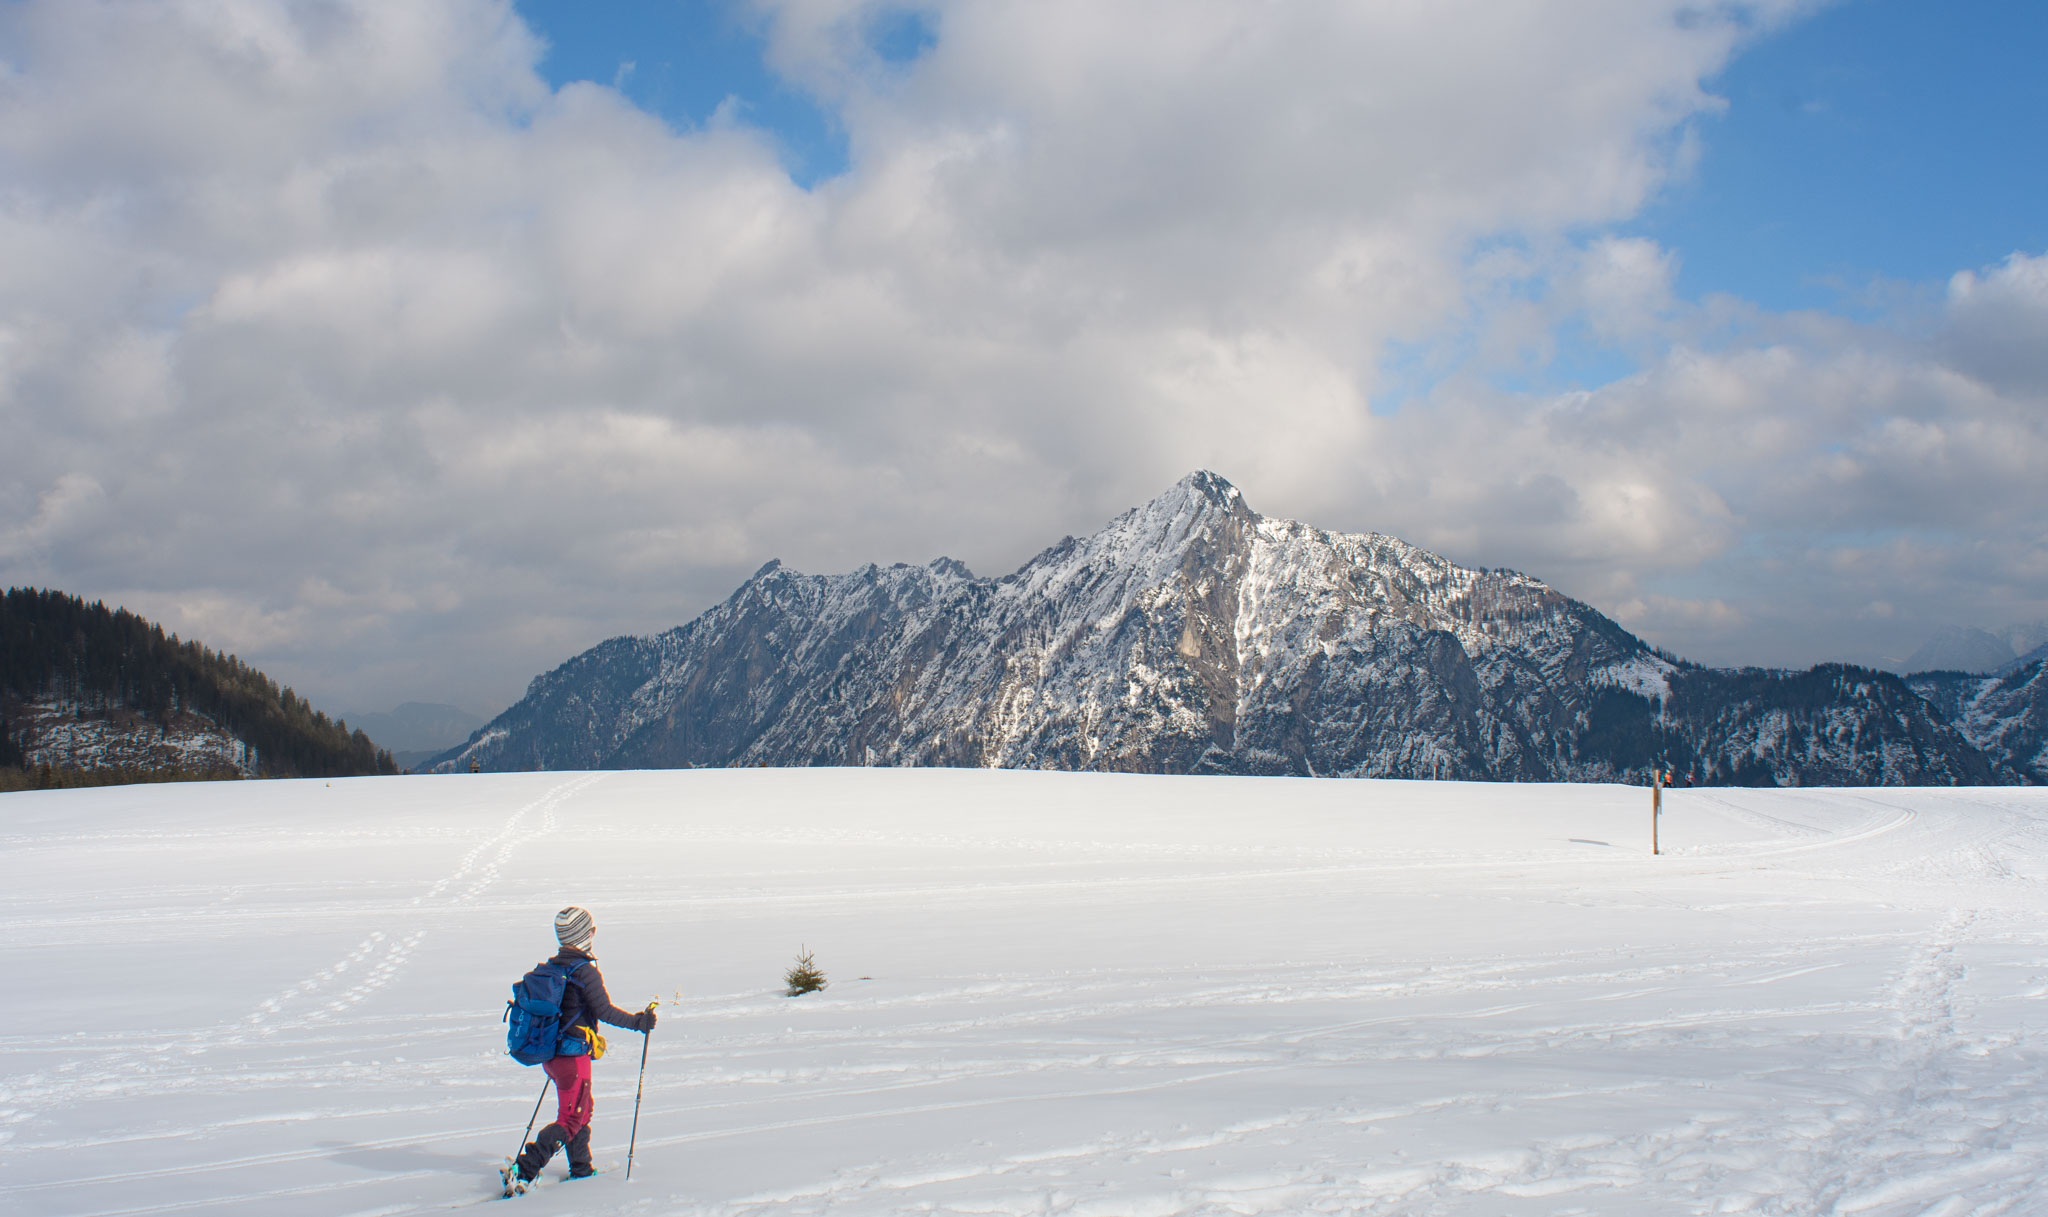 Maria beim Schneeschuhwanderung auf der Postalm, dem größten Almgebiet Österreichs